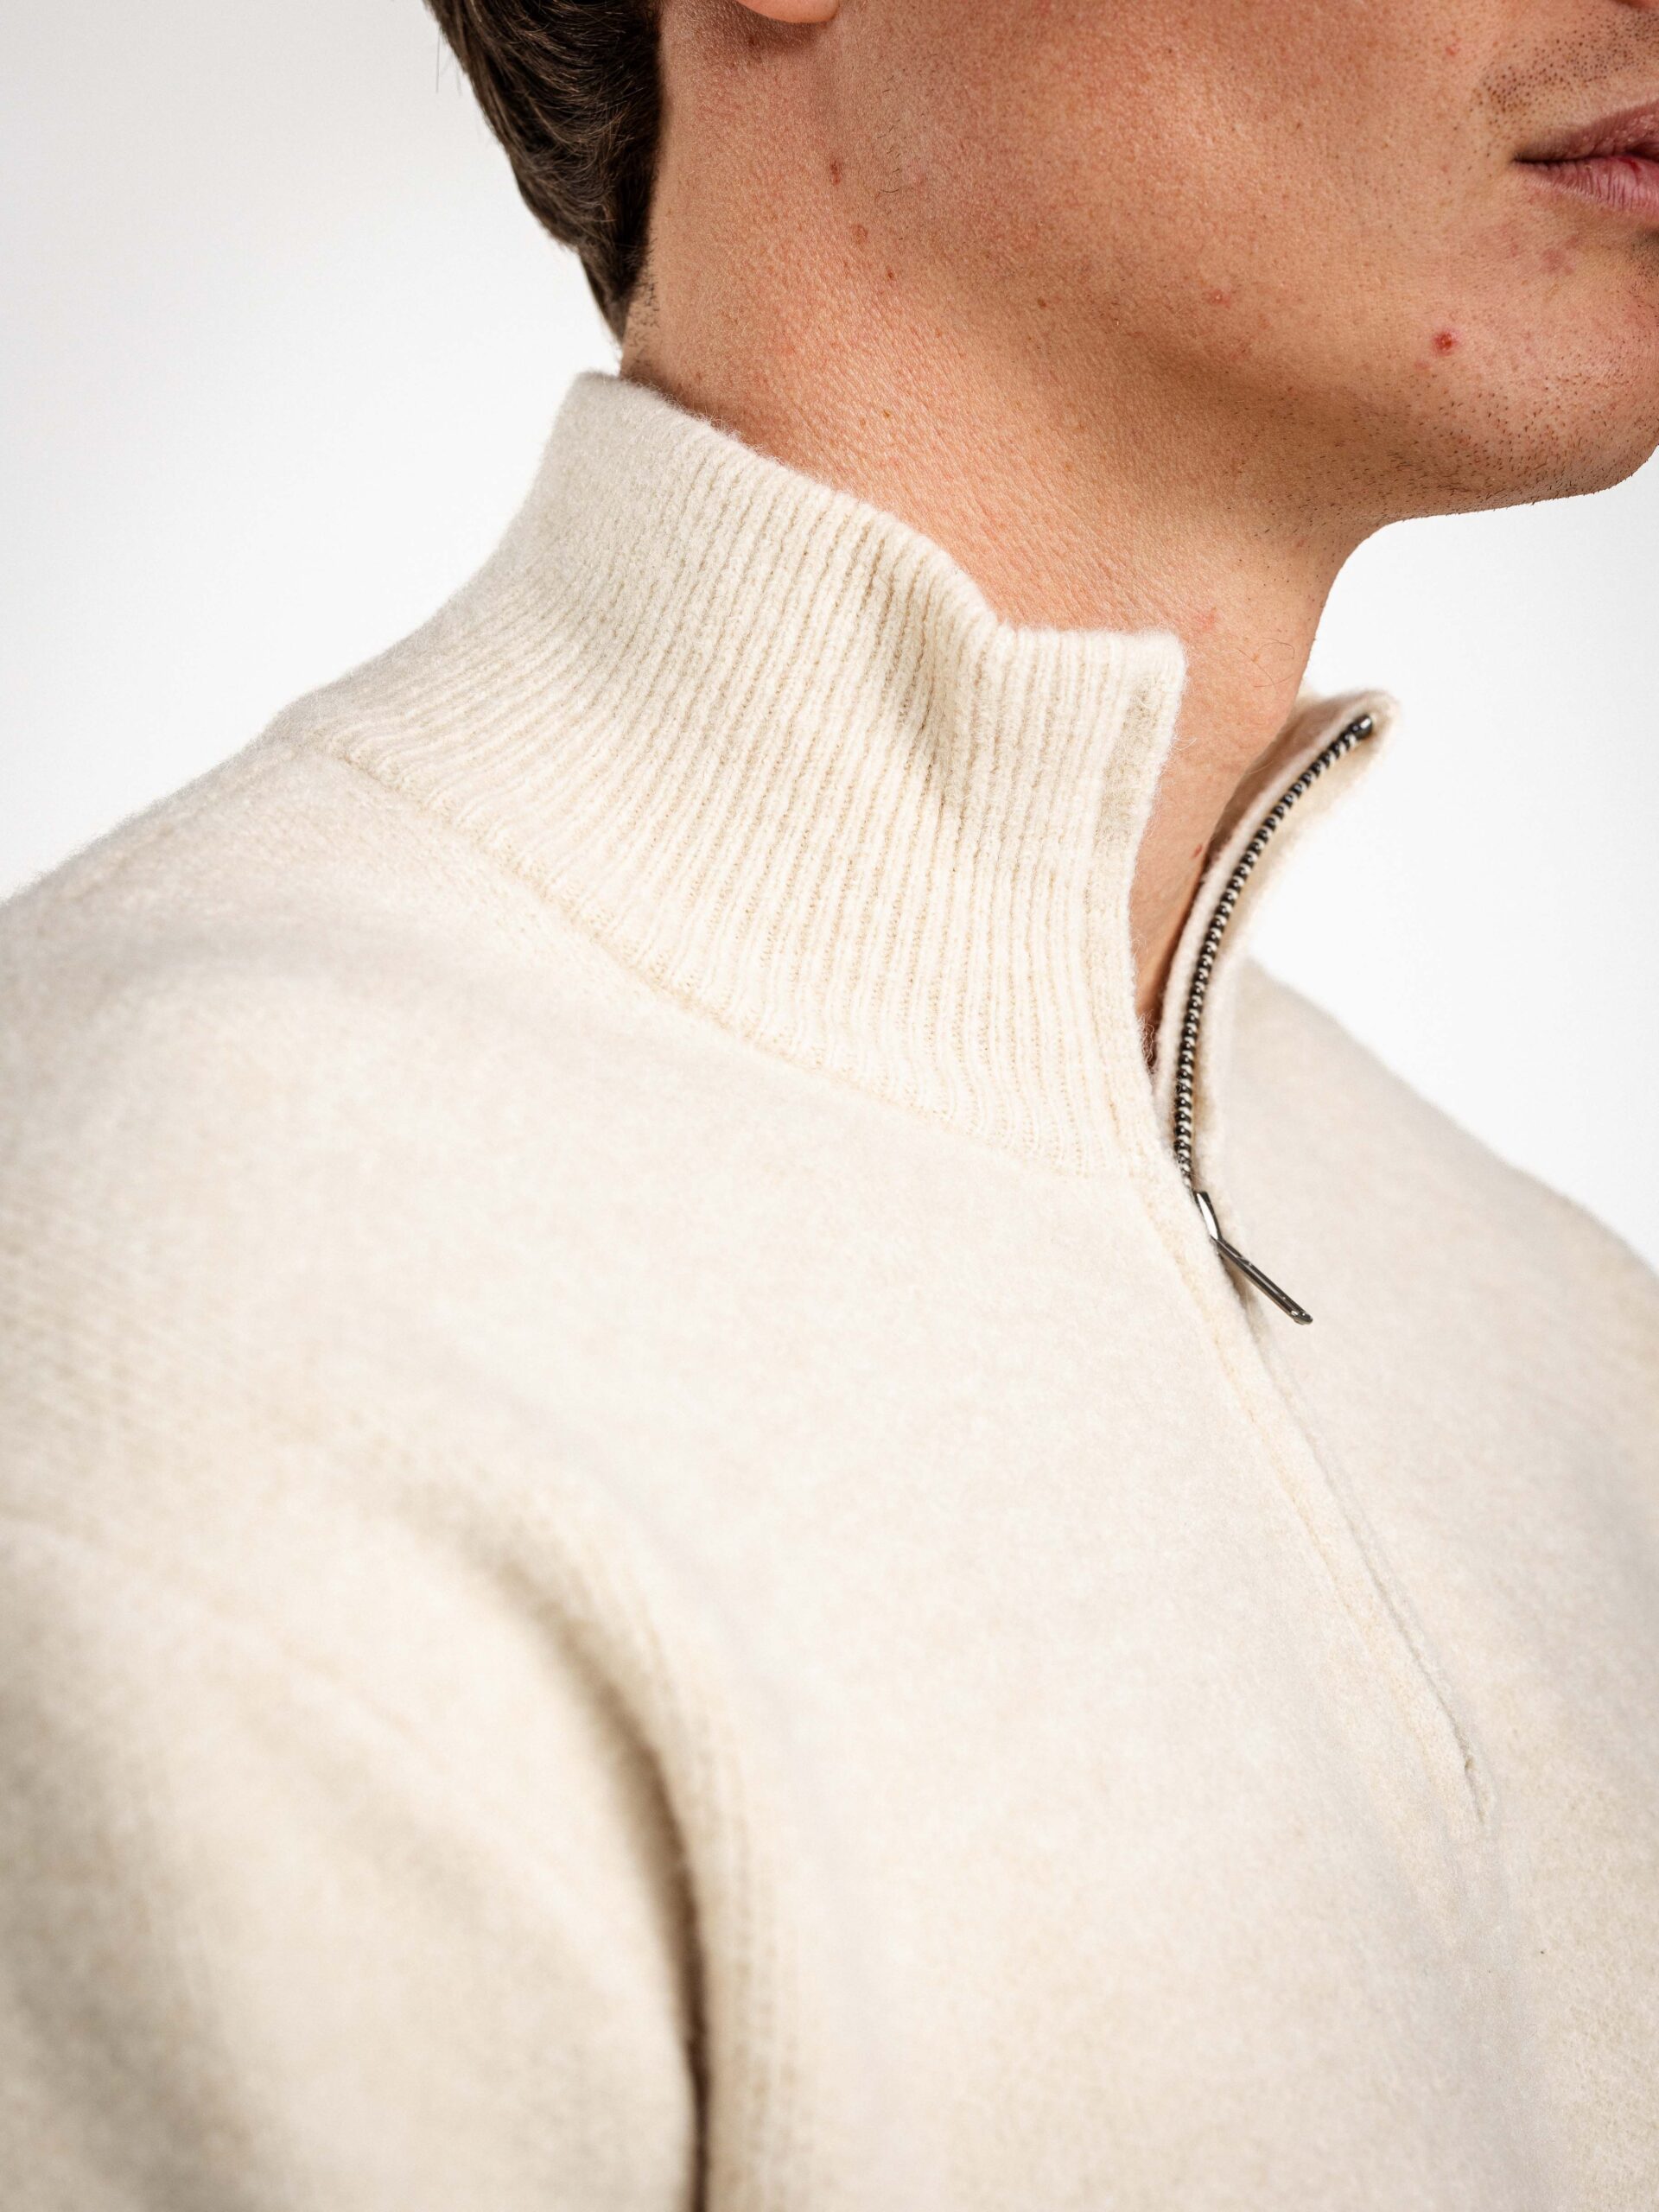 Texture Zipper Sweater 1608 WEAR